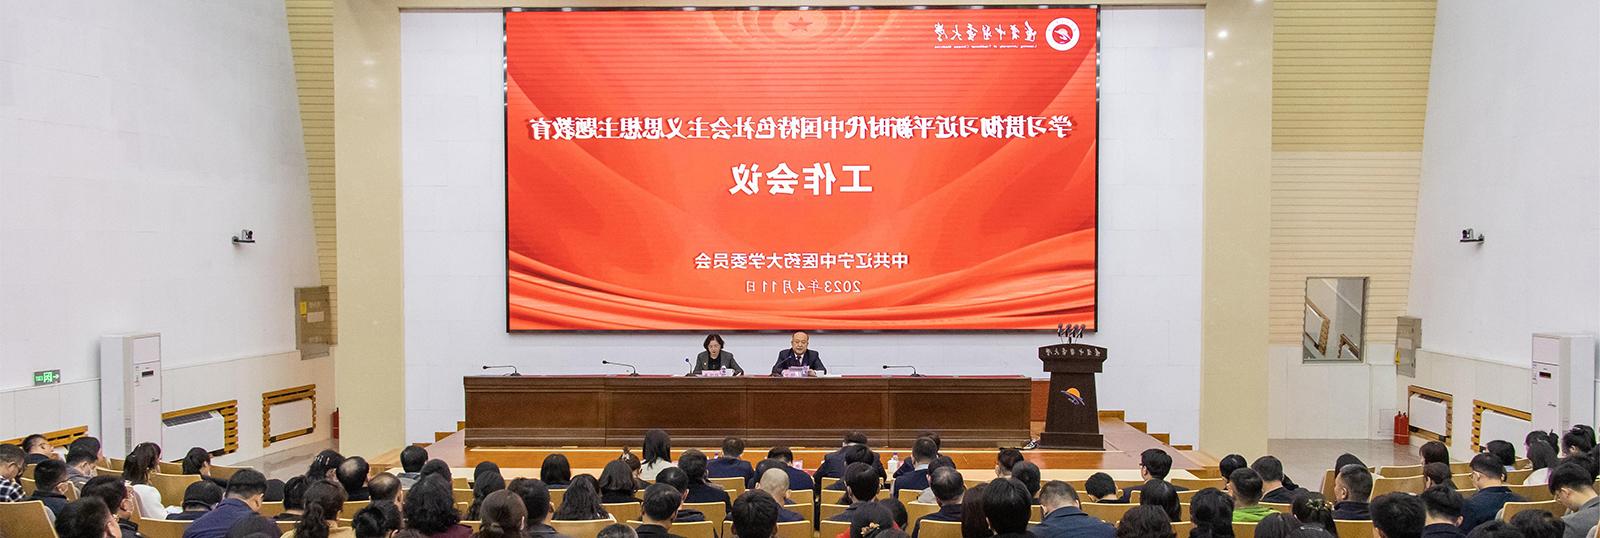 学校召开学习贯彻习近平新时代中国特色社会主义思想主题教育工作会议